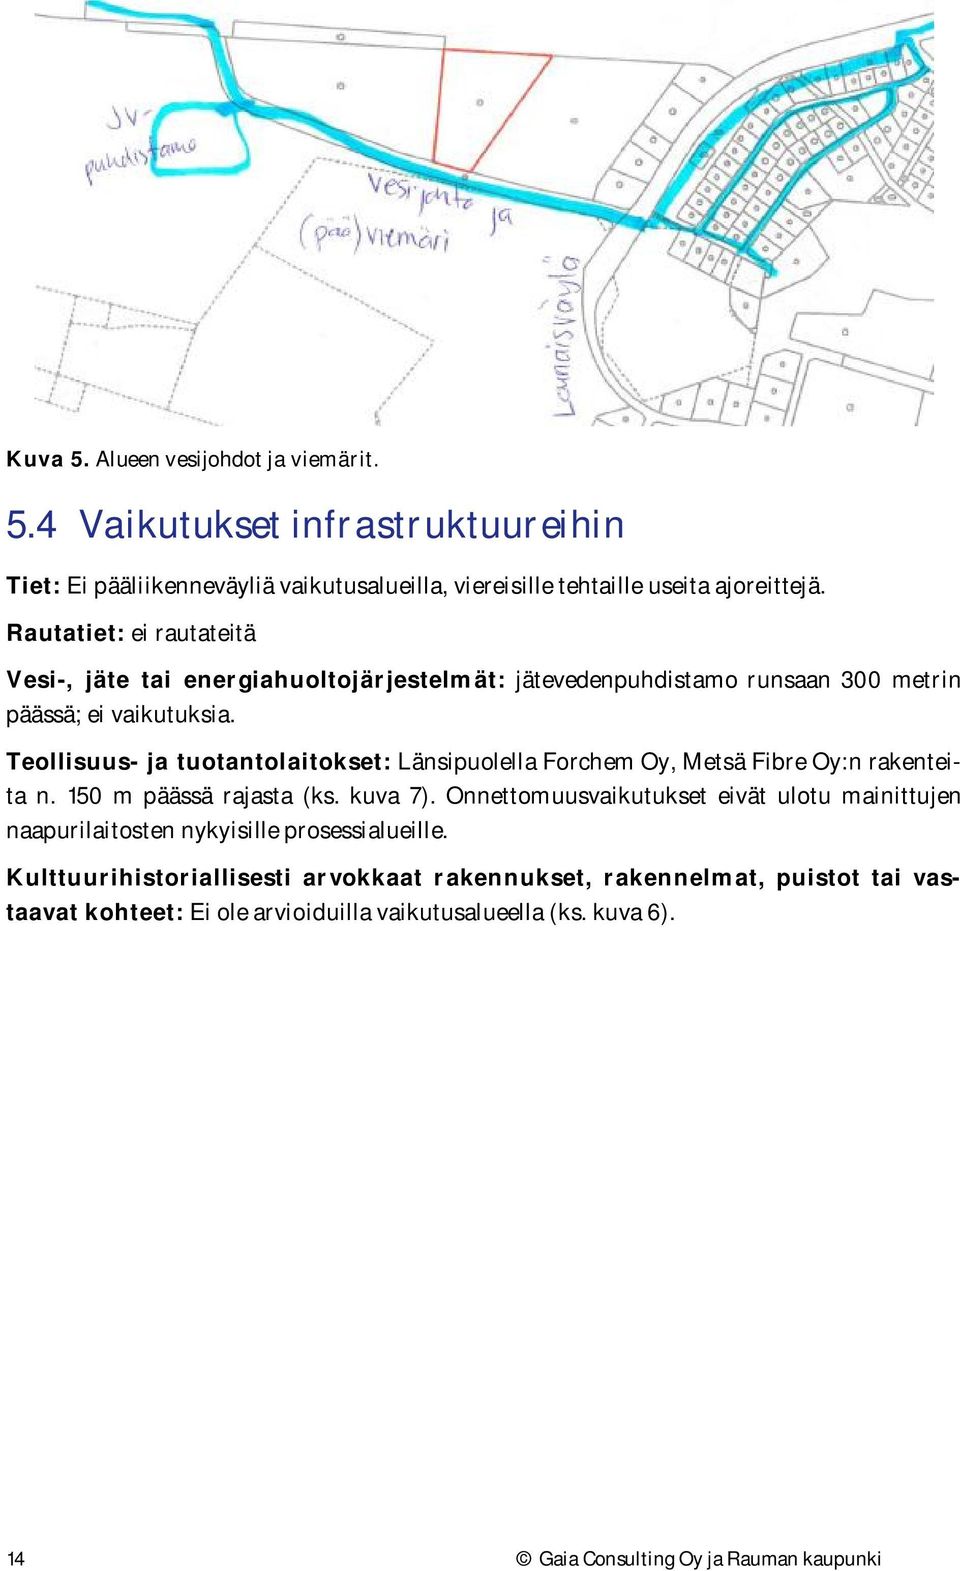 Teollisuus- ja tuotantolaitokset: Länsipuolella Forchem Oy, Metsä Fibre Oy:n rakenteita n. 150 m päässä rajasta (ks. kuva 7).